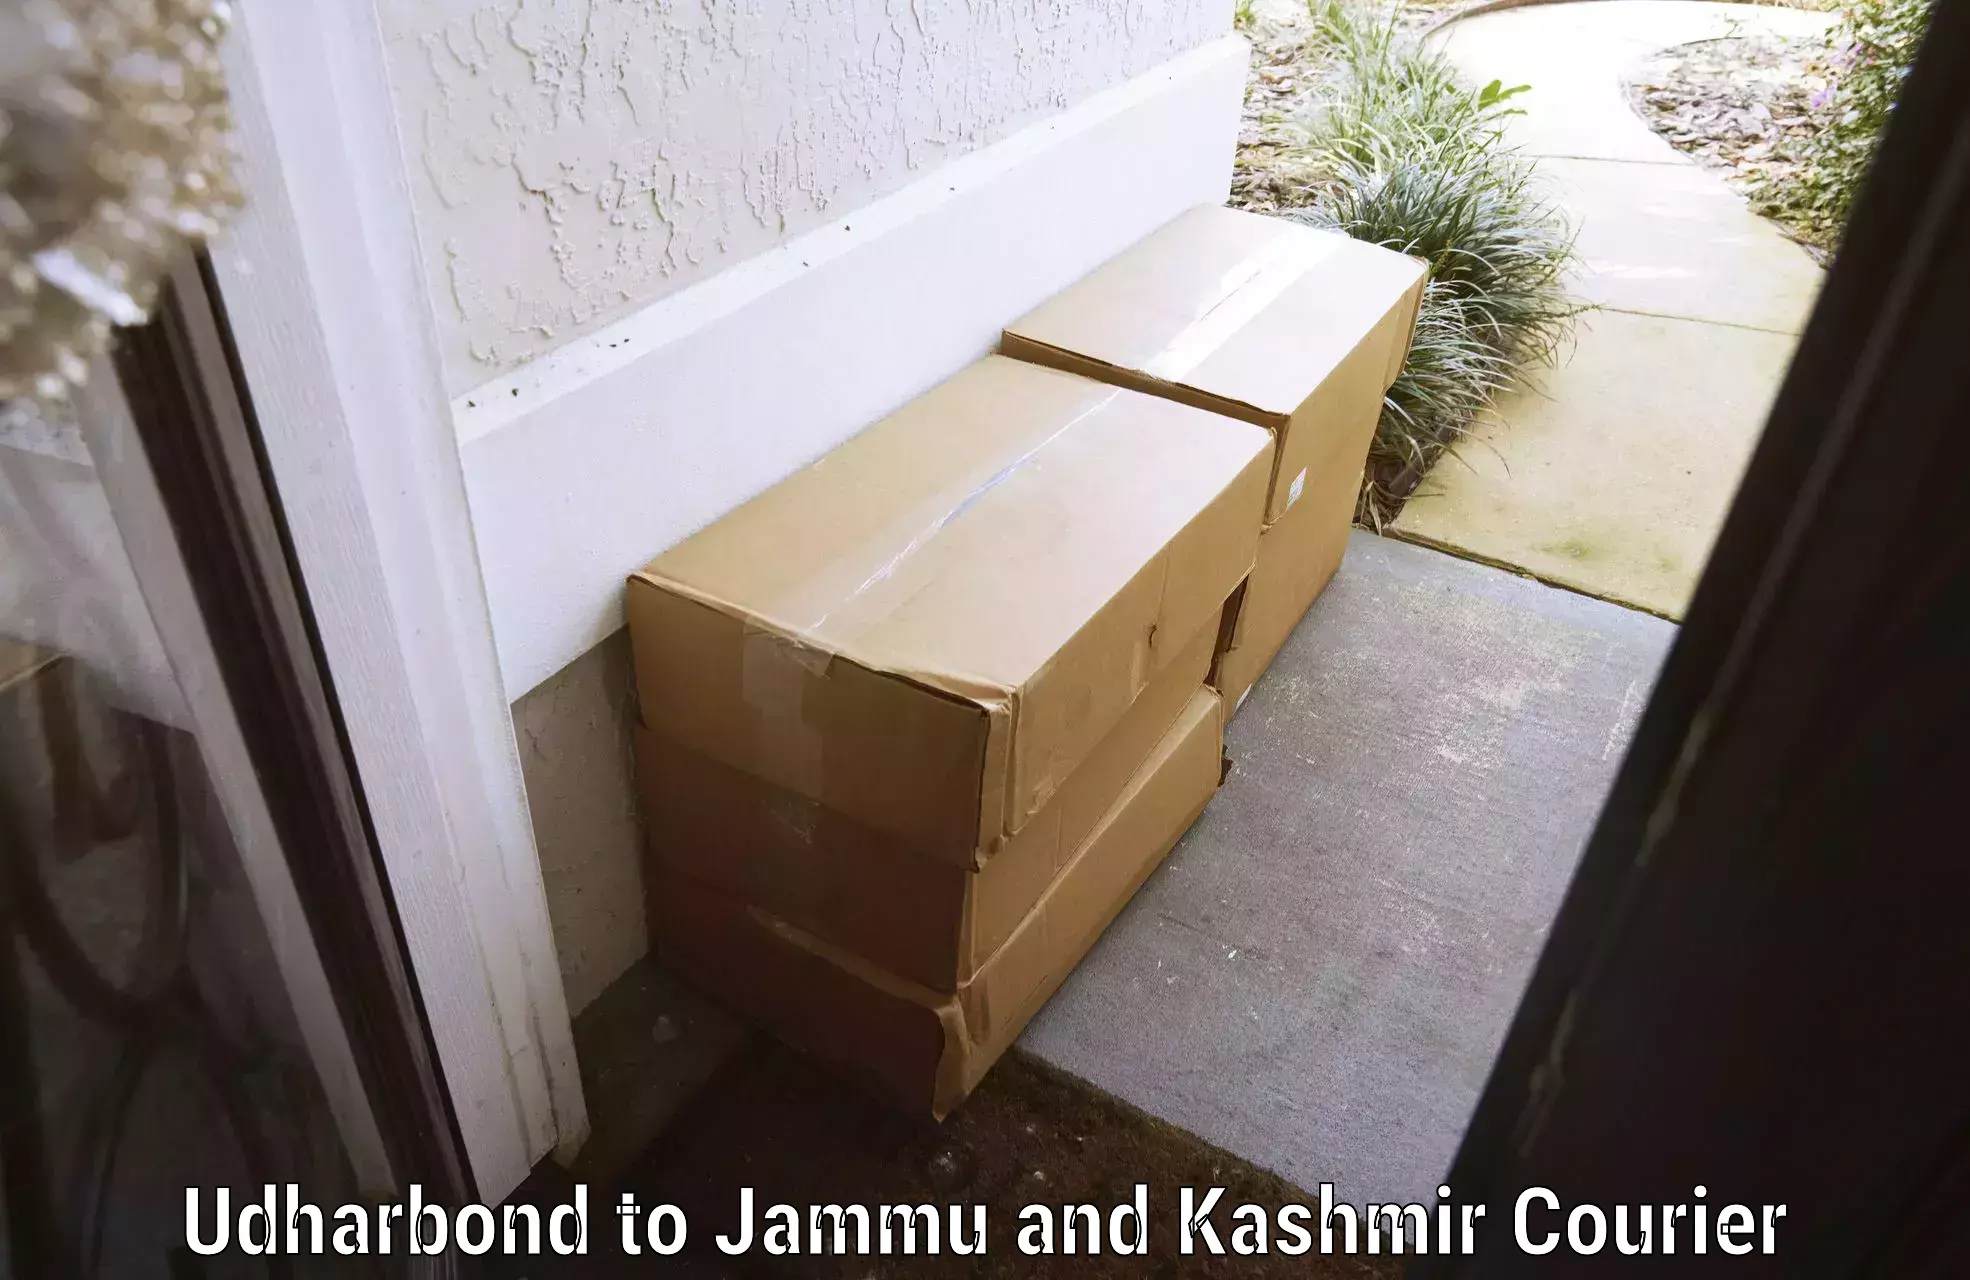 Baggage delivery planning Udharbond to Srinagar Kashmir